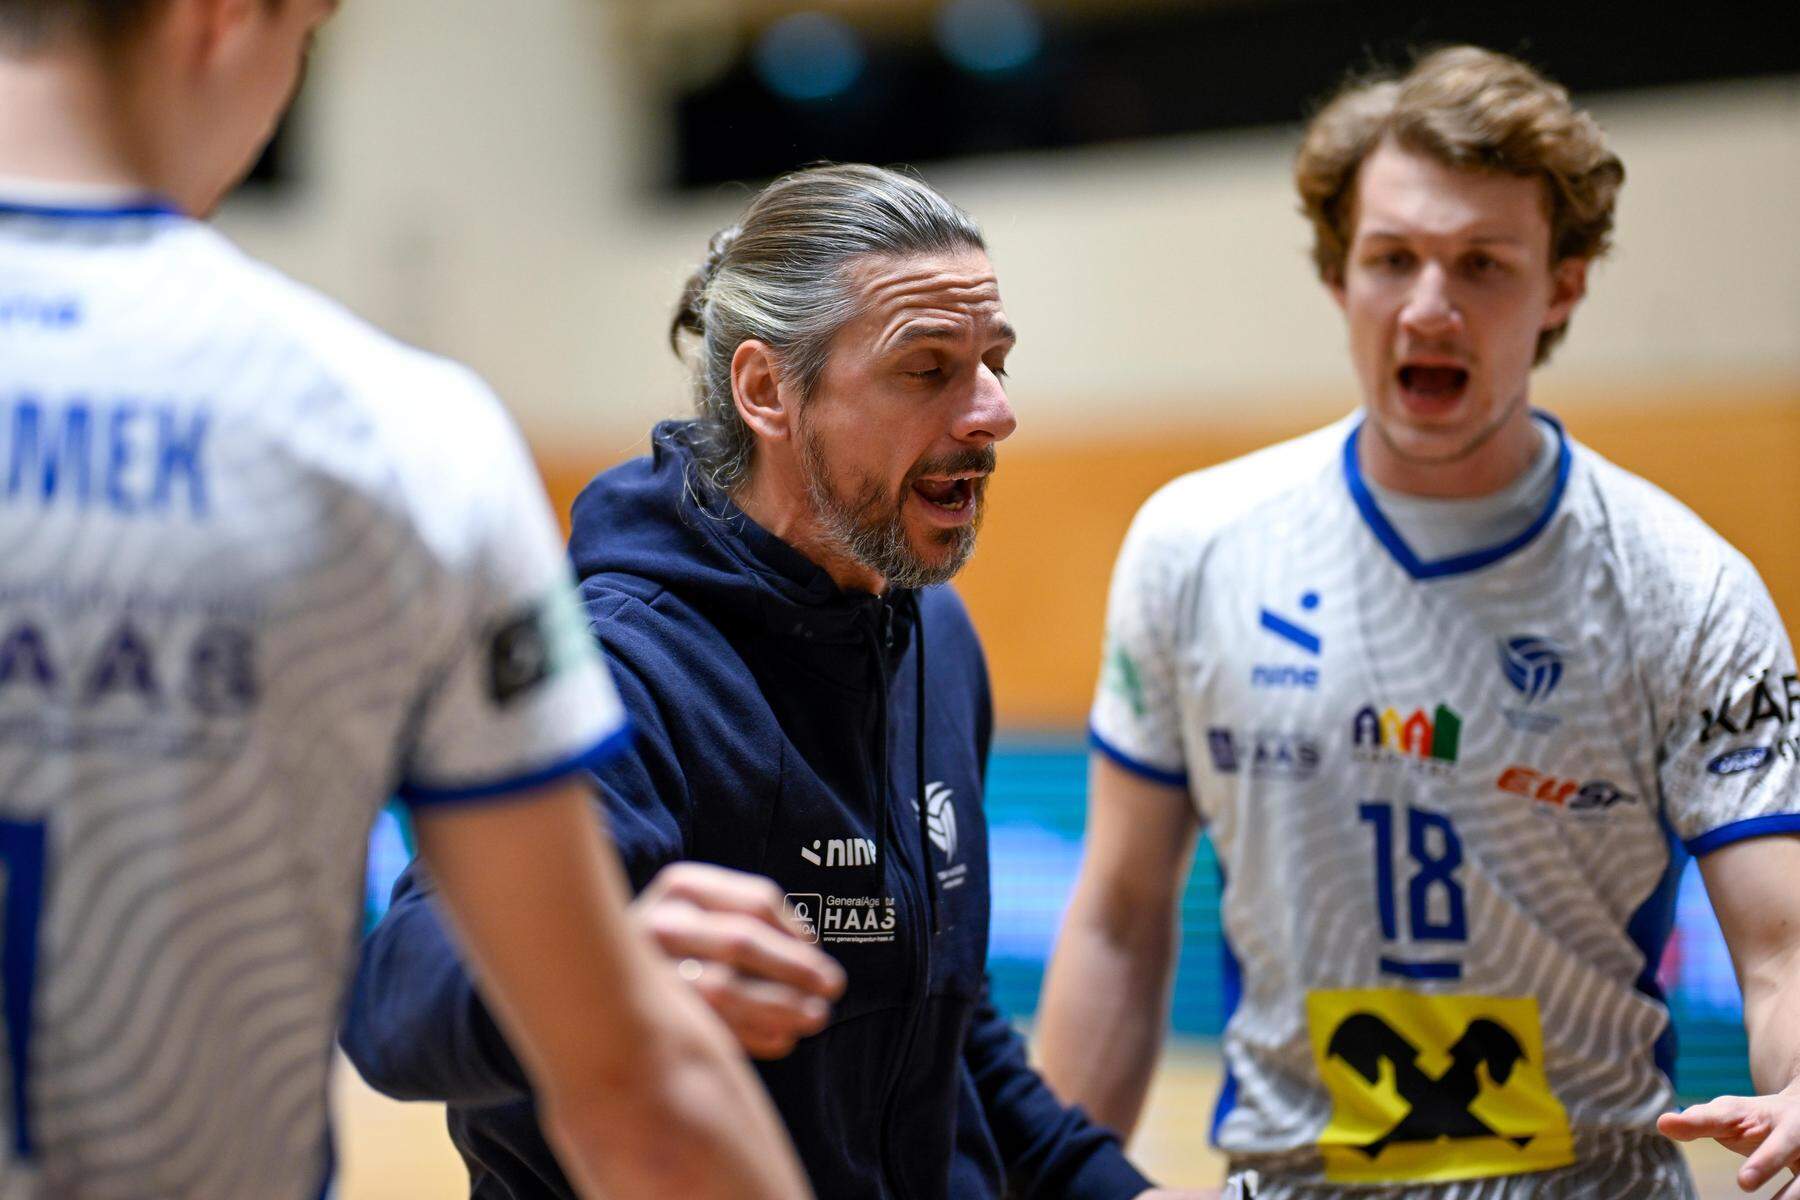 Volleyball | Hartberg-Trainer Markus Hirczy mit „Comeback“ vor Derby gegen Graz